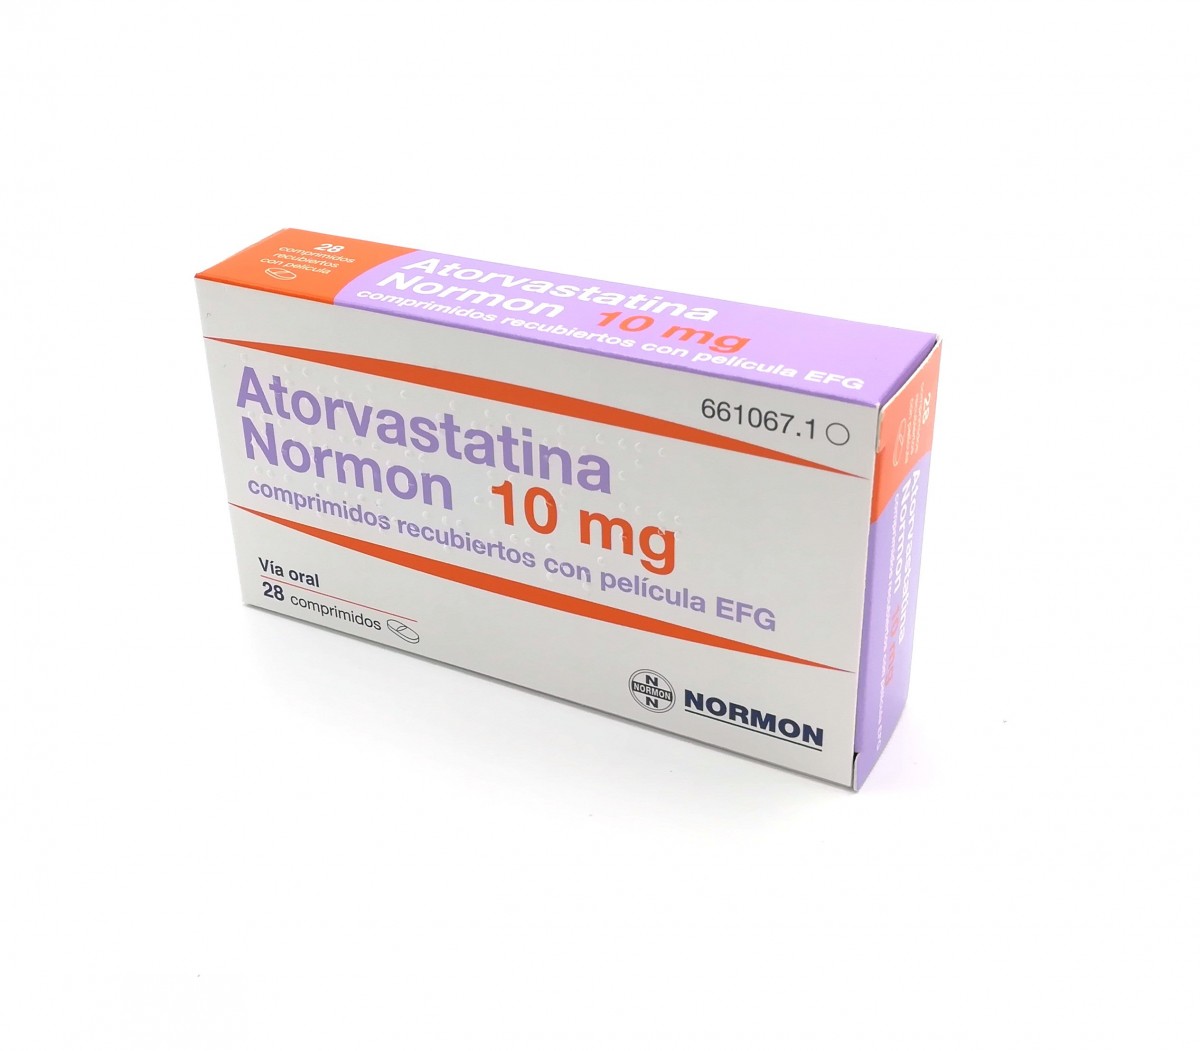 ATORVASTATINA NORMON 10 mg COMPRIMIDOS RECUBIERTOS CON PELICULA EFG , 28 comprimidos fotografía del envase.